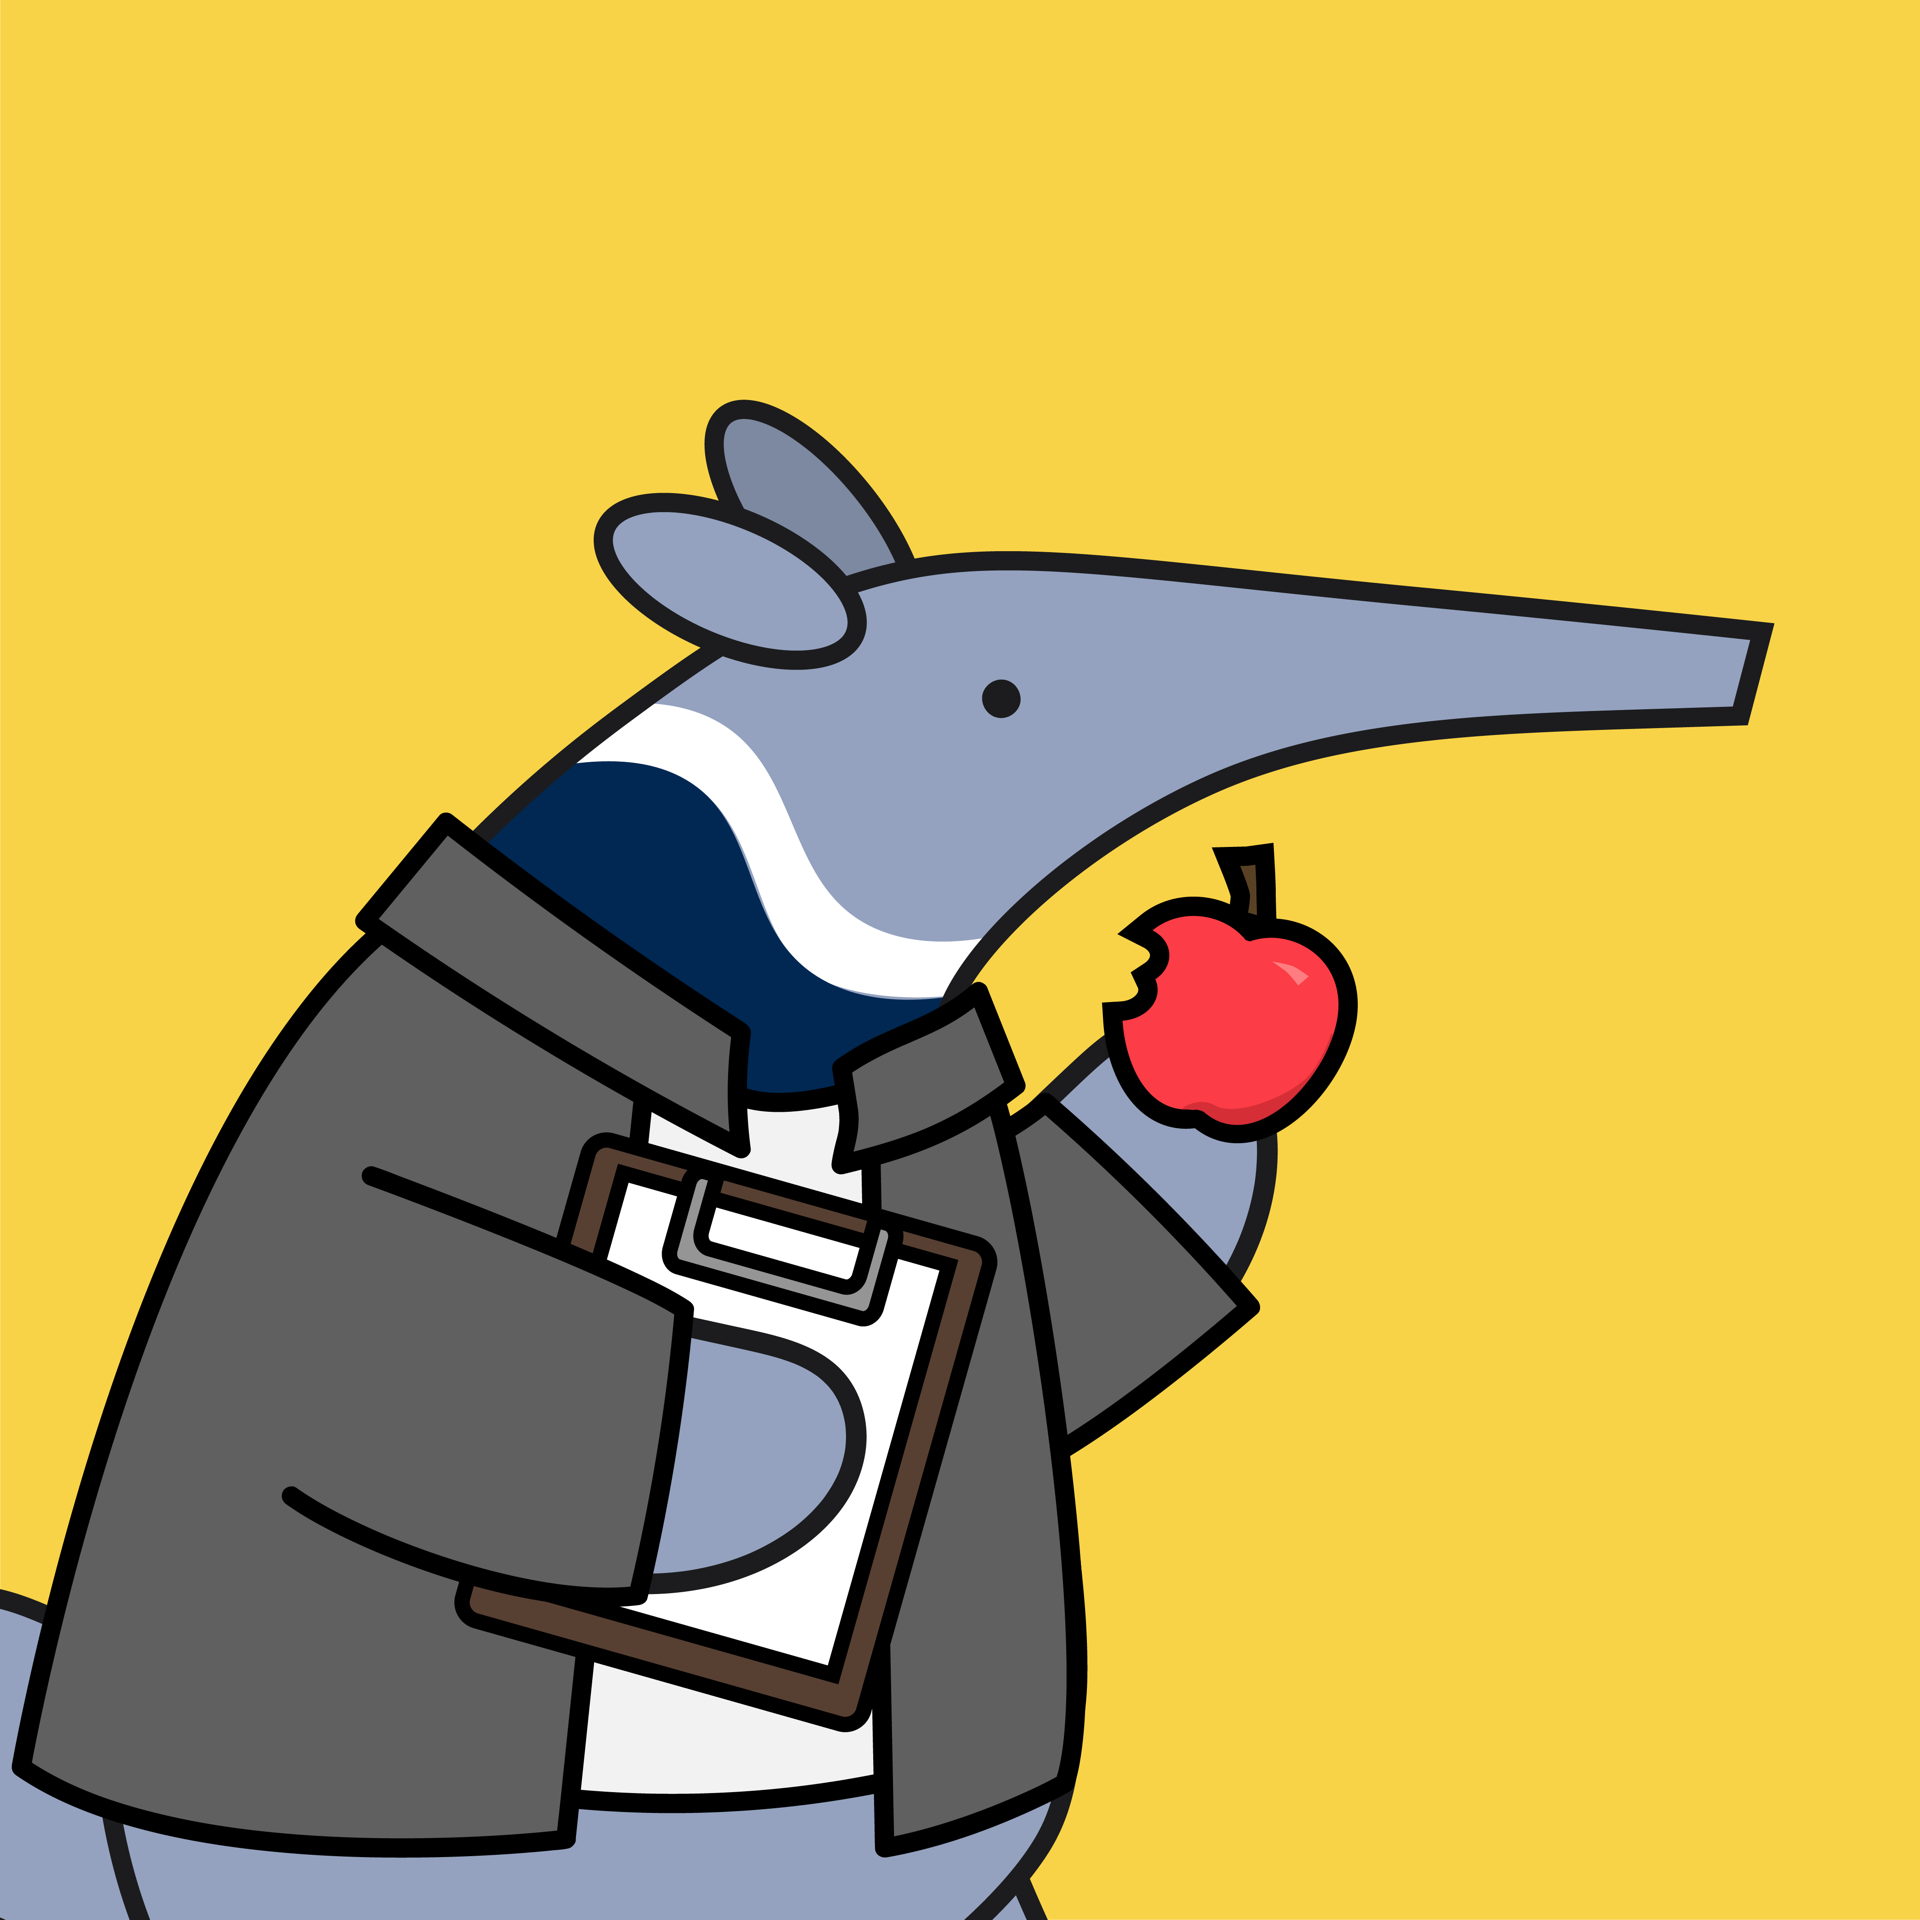 Professor Anteater eating an apple